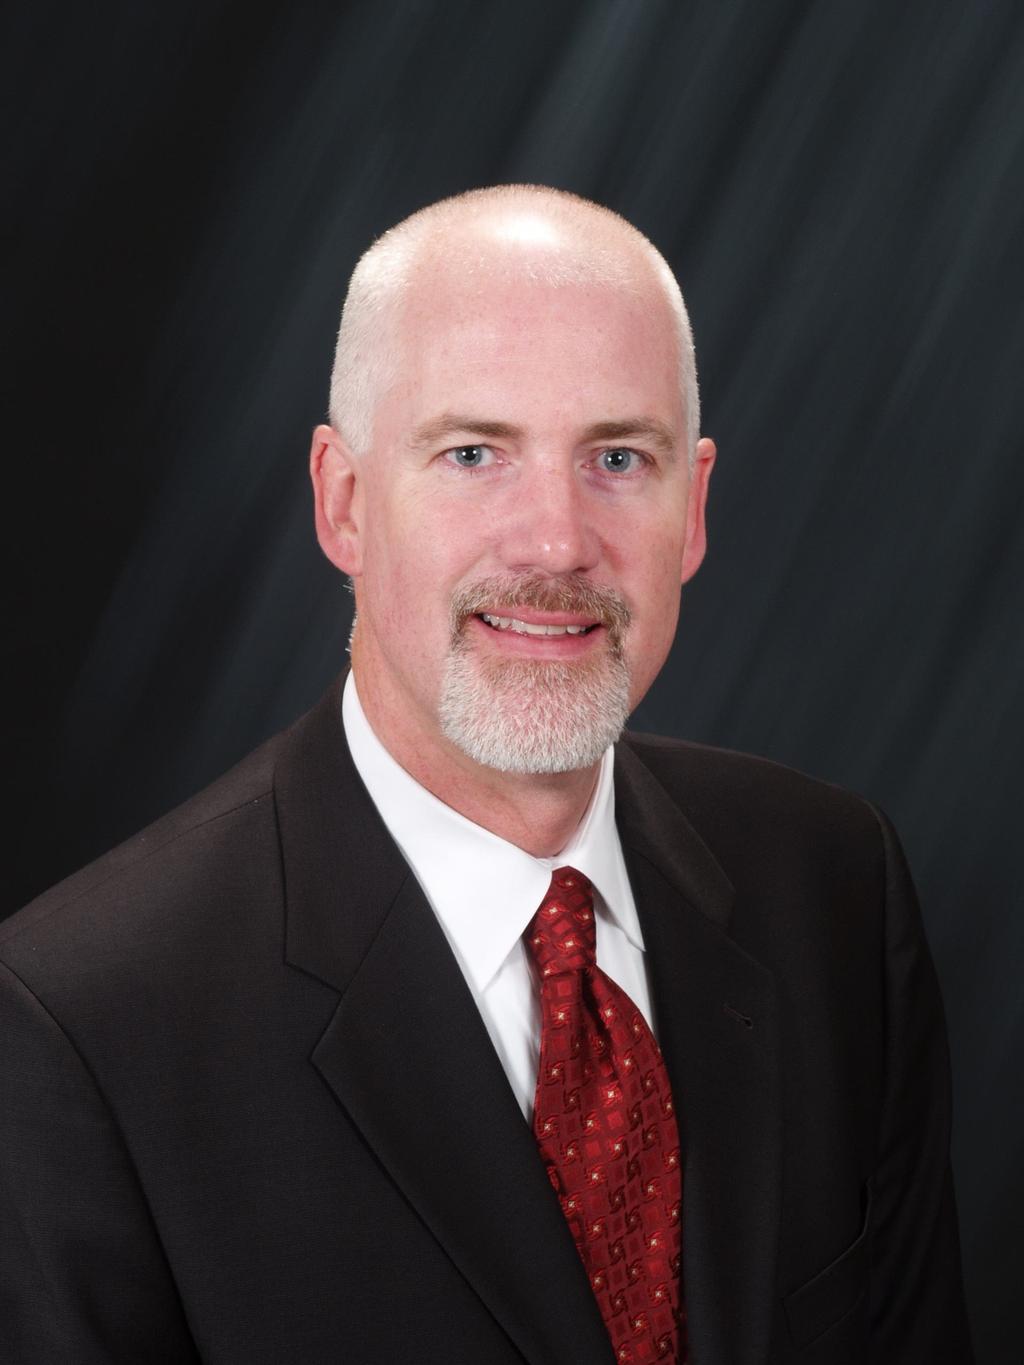 DAN STEWART, CCIM Managing Director PROFESSIONAL BACKGROUND Dan Stewart, CCIM serves as Managing Director for SVN Stewart Commercial Group, LLC in Ann Arbor, Michigan.